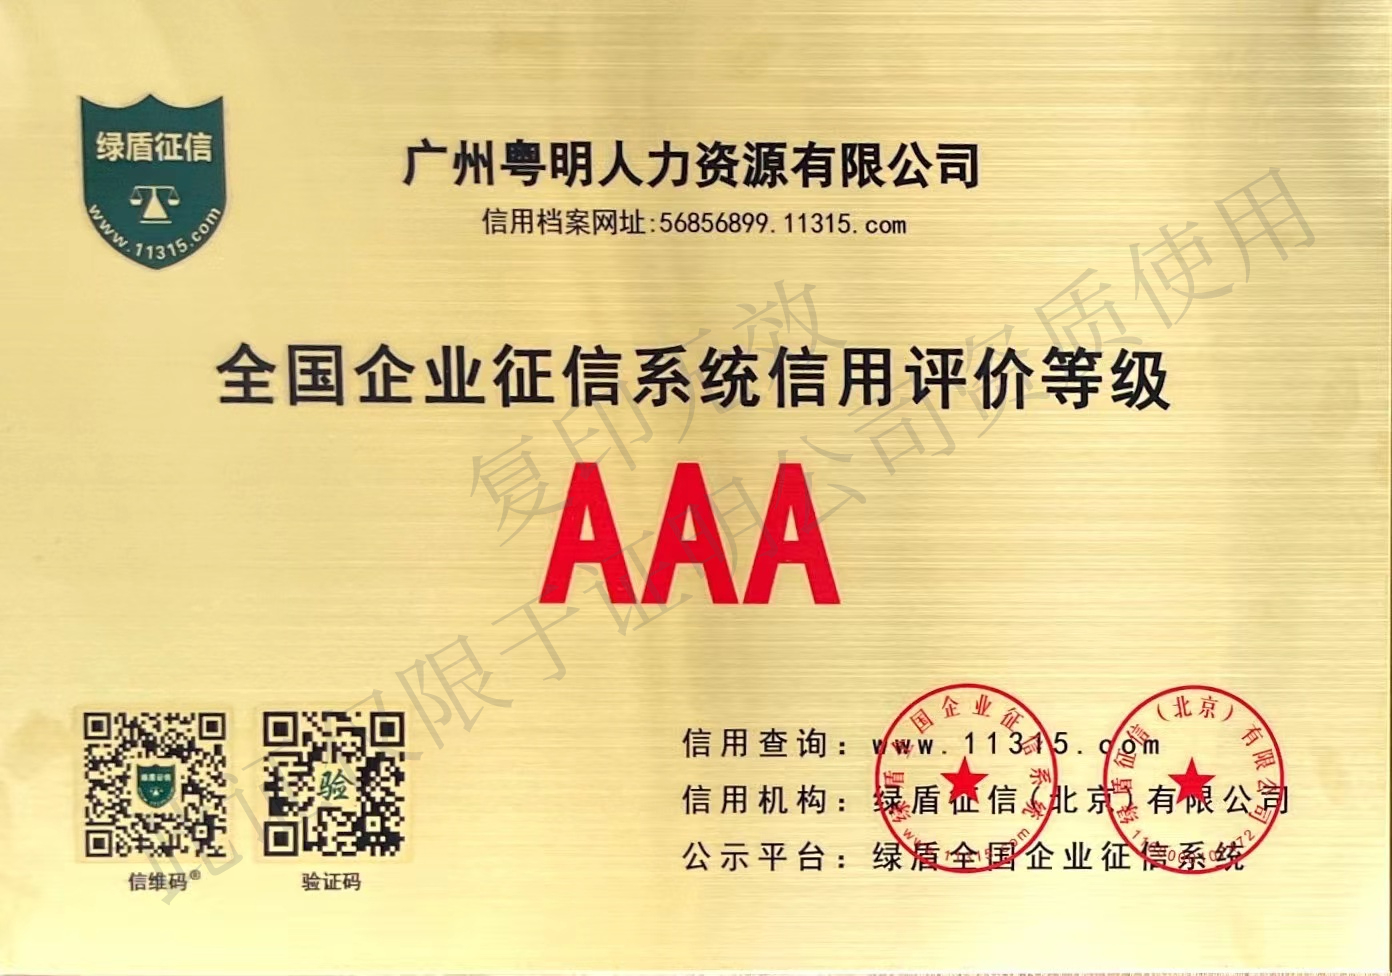 綠盾征信“AAA”級信用證書